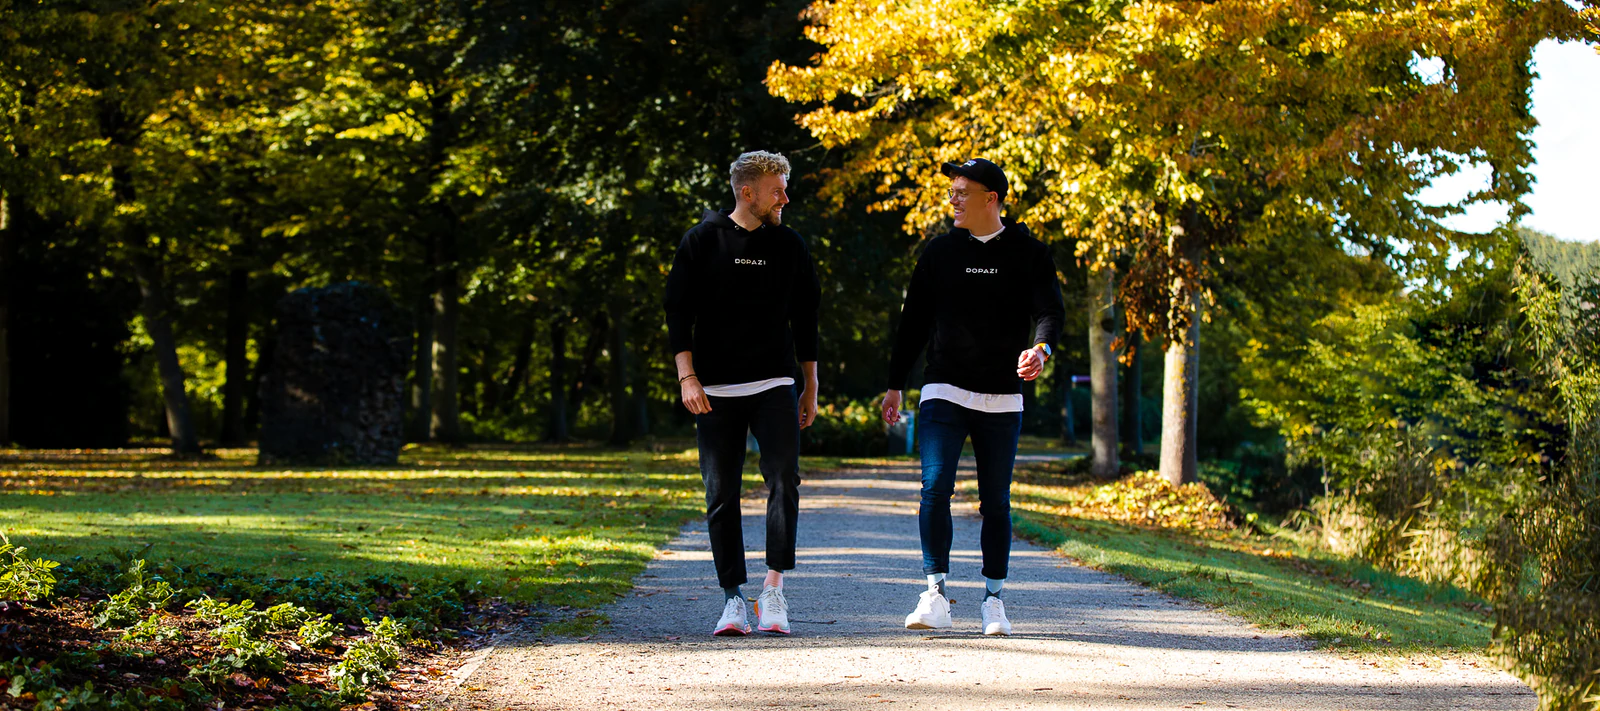 Die beiden Gründer von DOPAZI präsentieren ihre Socken beim Spaziergang.